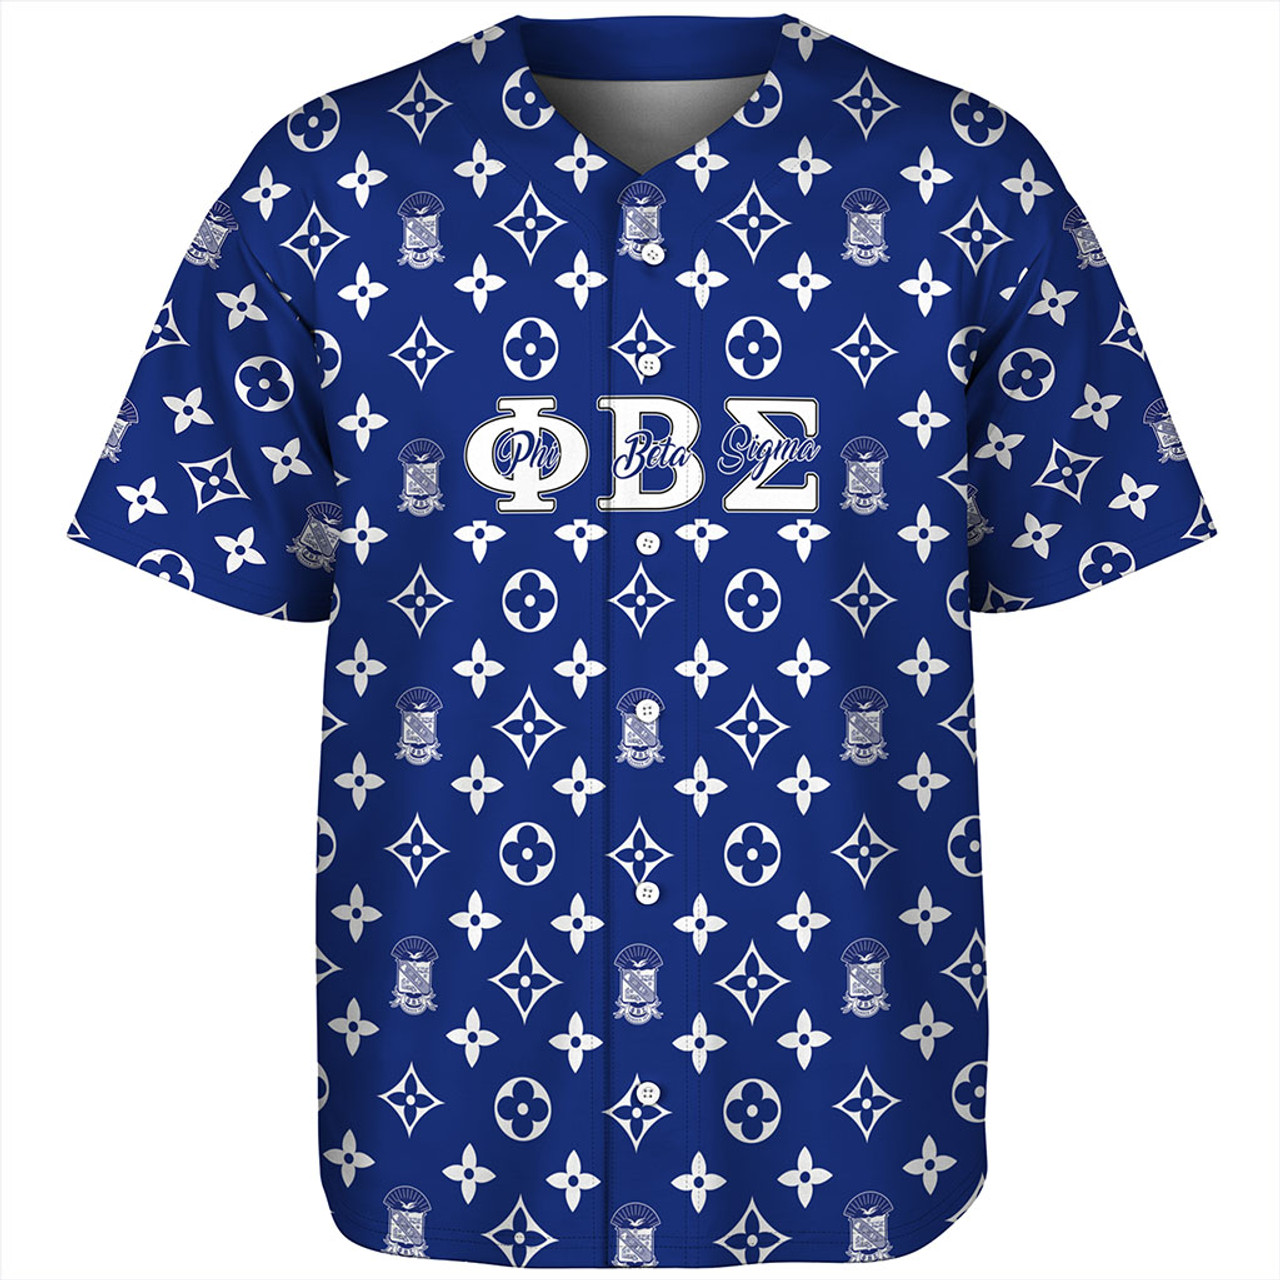 Phi Beta Sigma Baseball Shirt LouisV Pattern